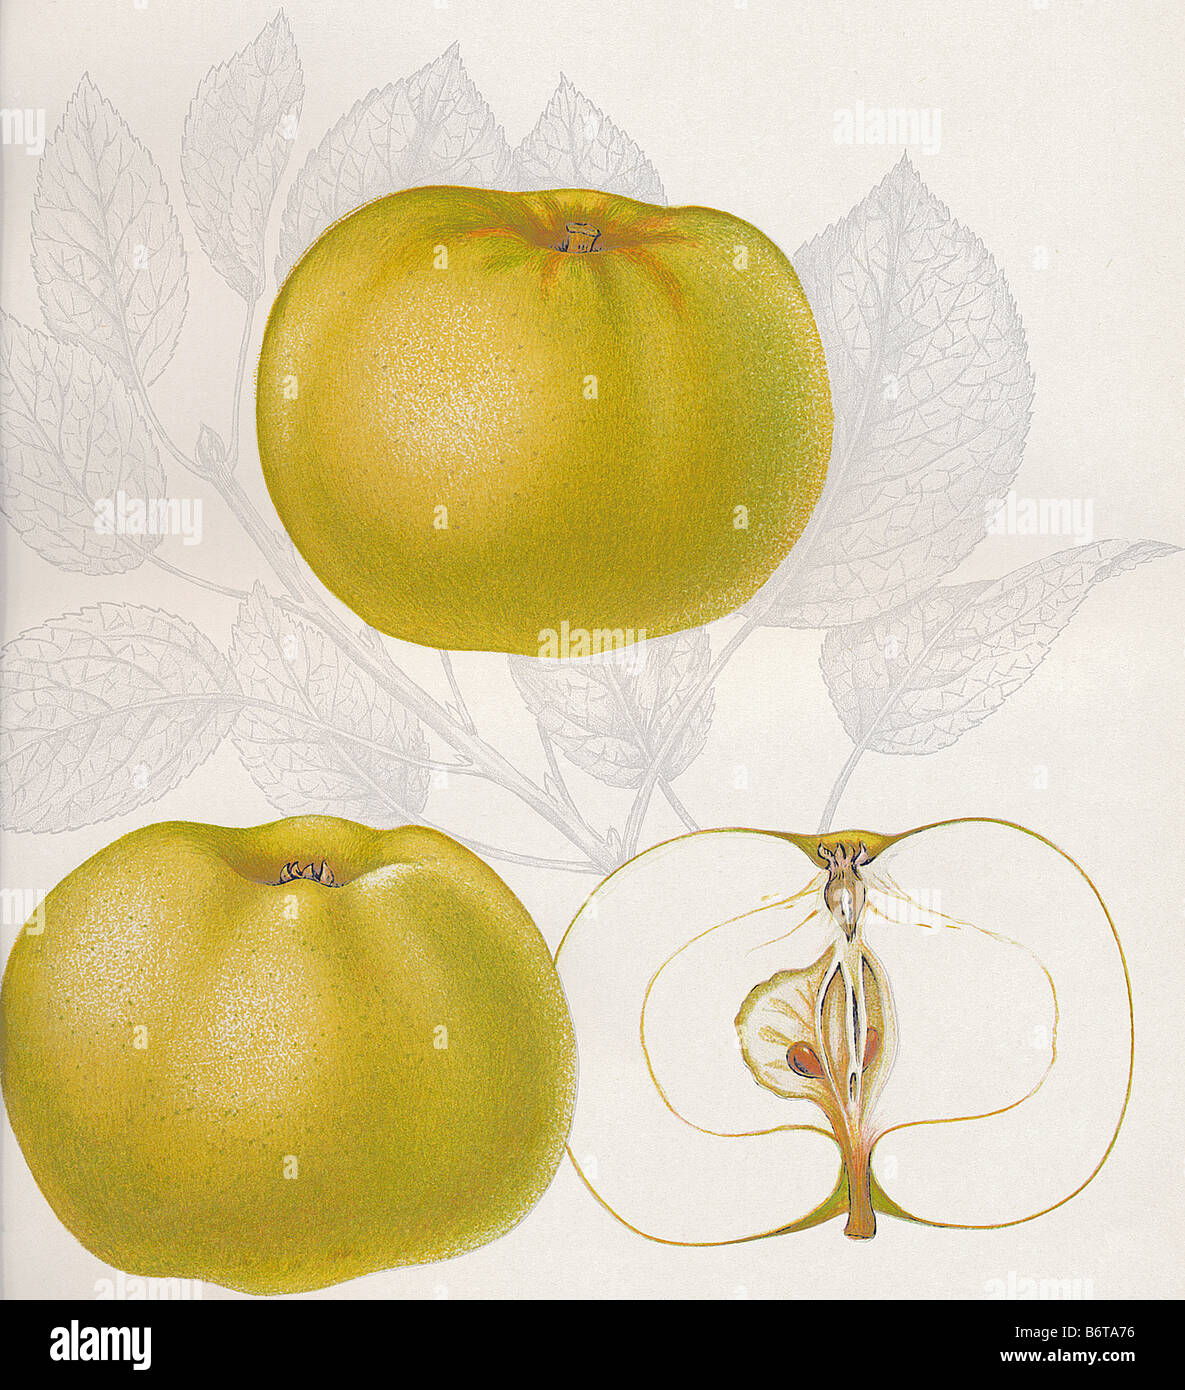 Illustration of the apple 'hanaskogsäpple' Stock Photo